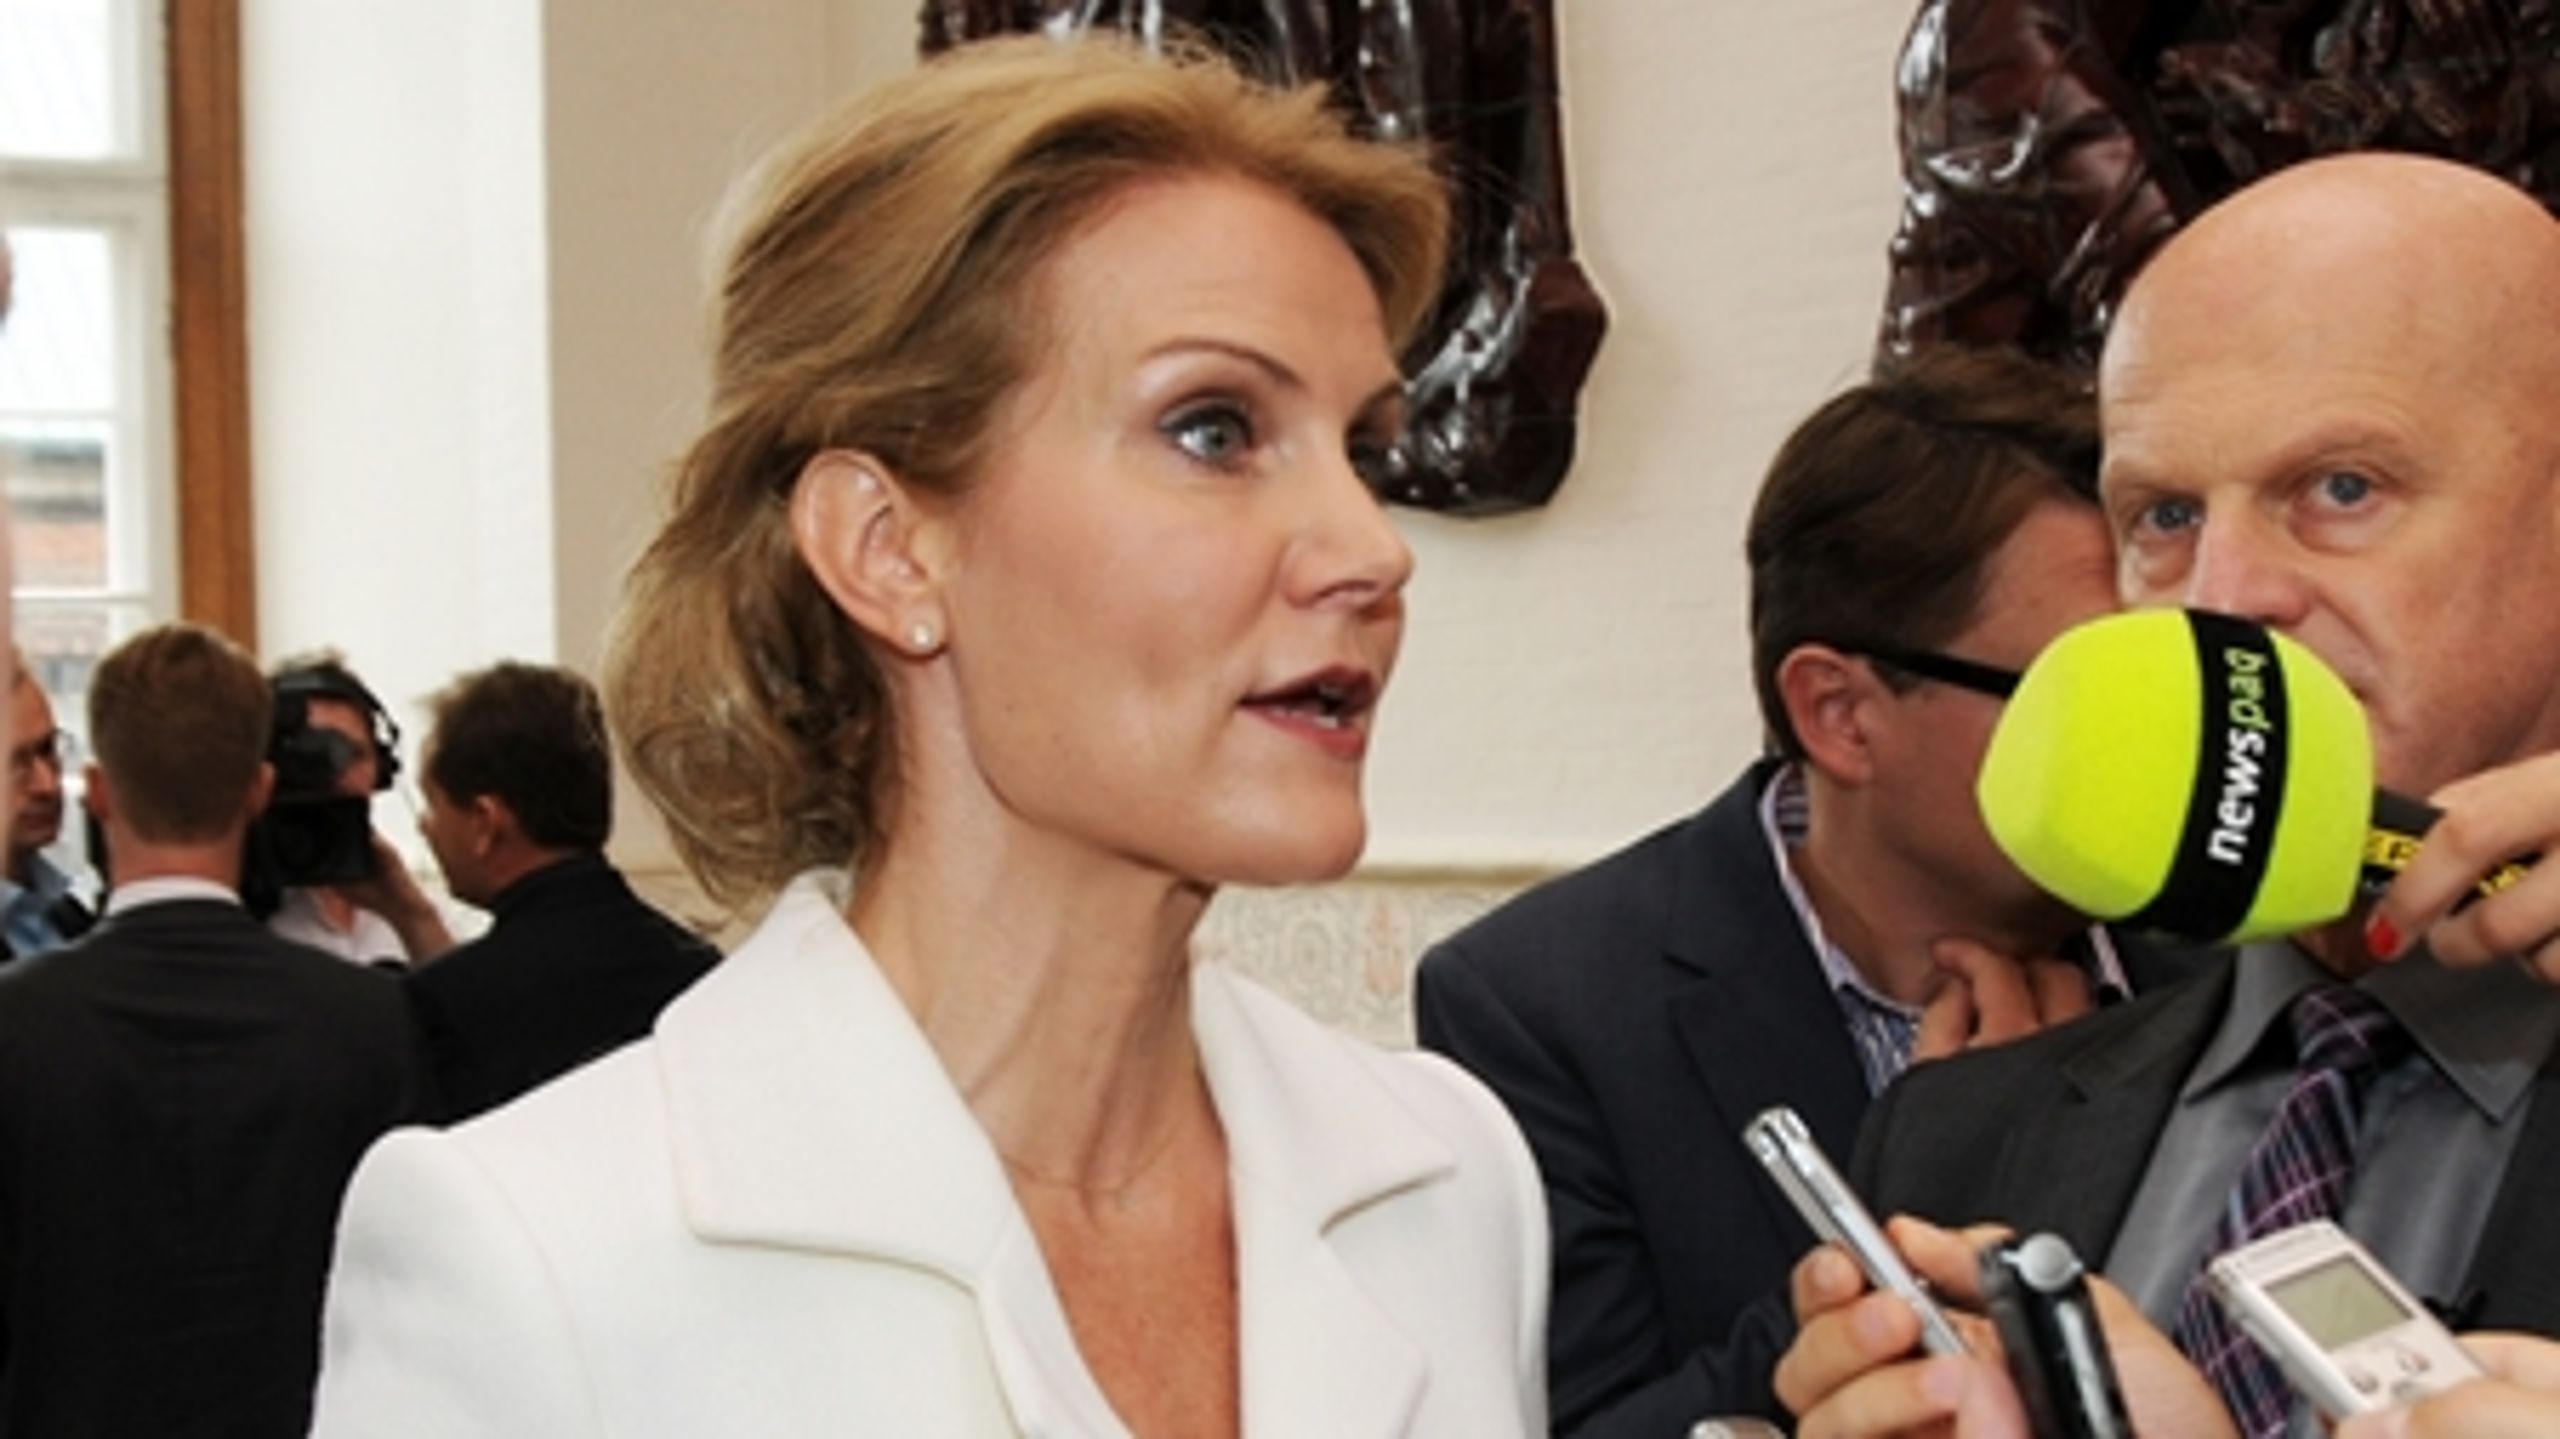 Kun hver femte vælger mener, at Statsminister Helle Thorning-Schmidts socialdemokrati er regeringens mest magtfulde.